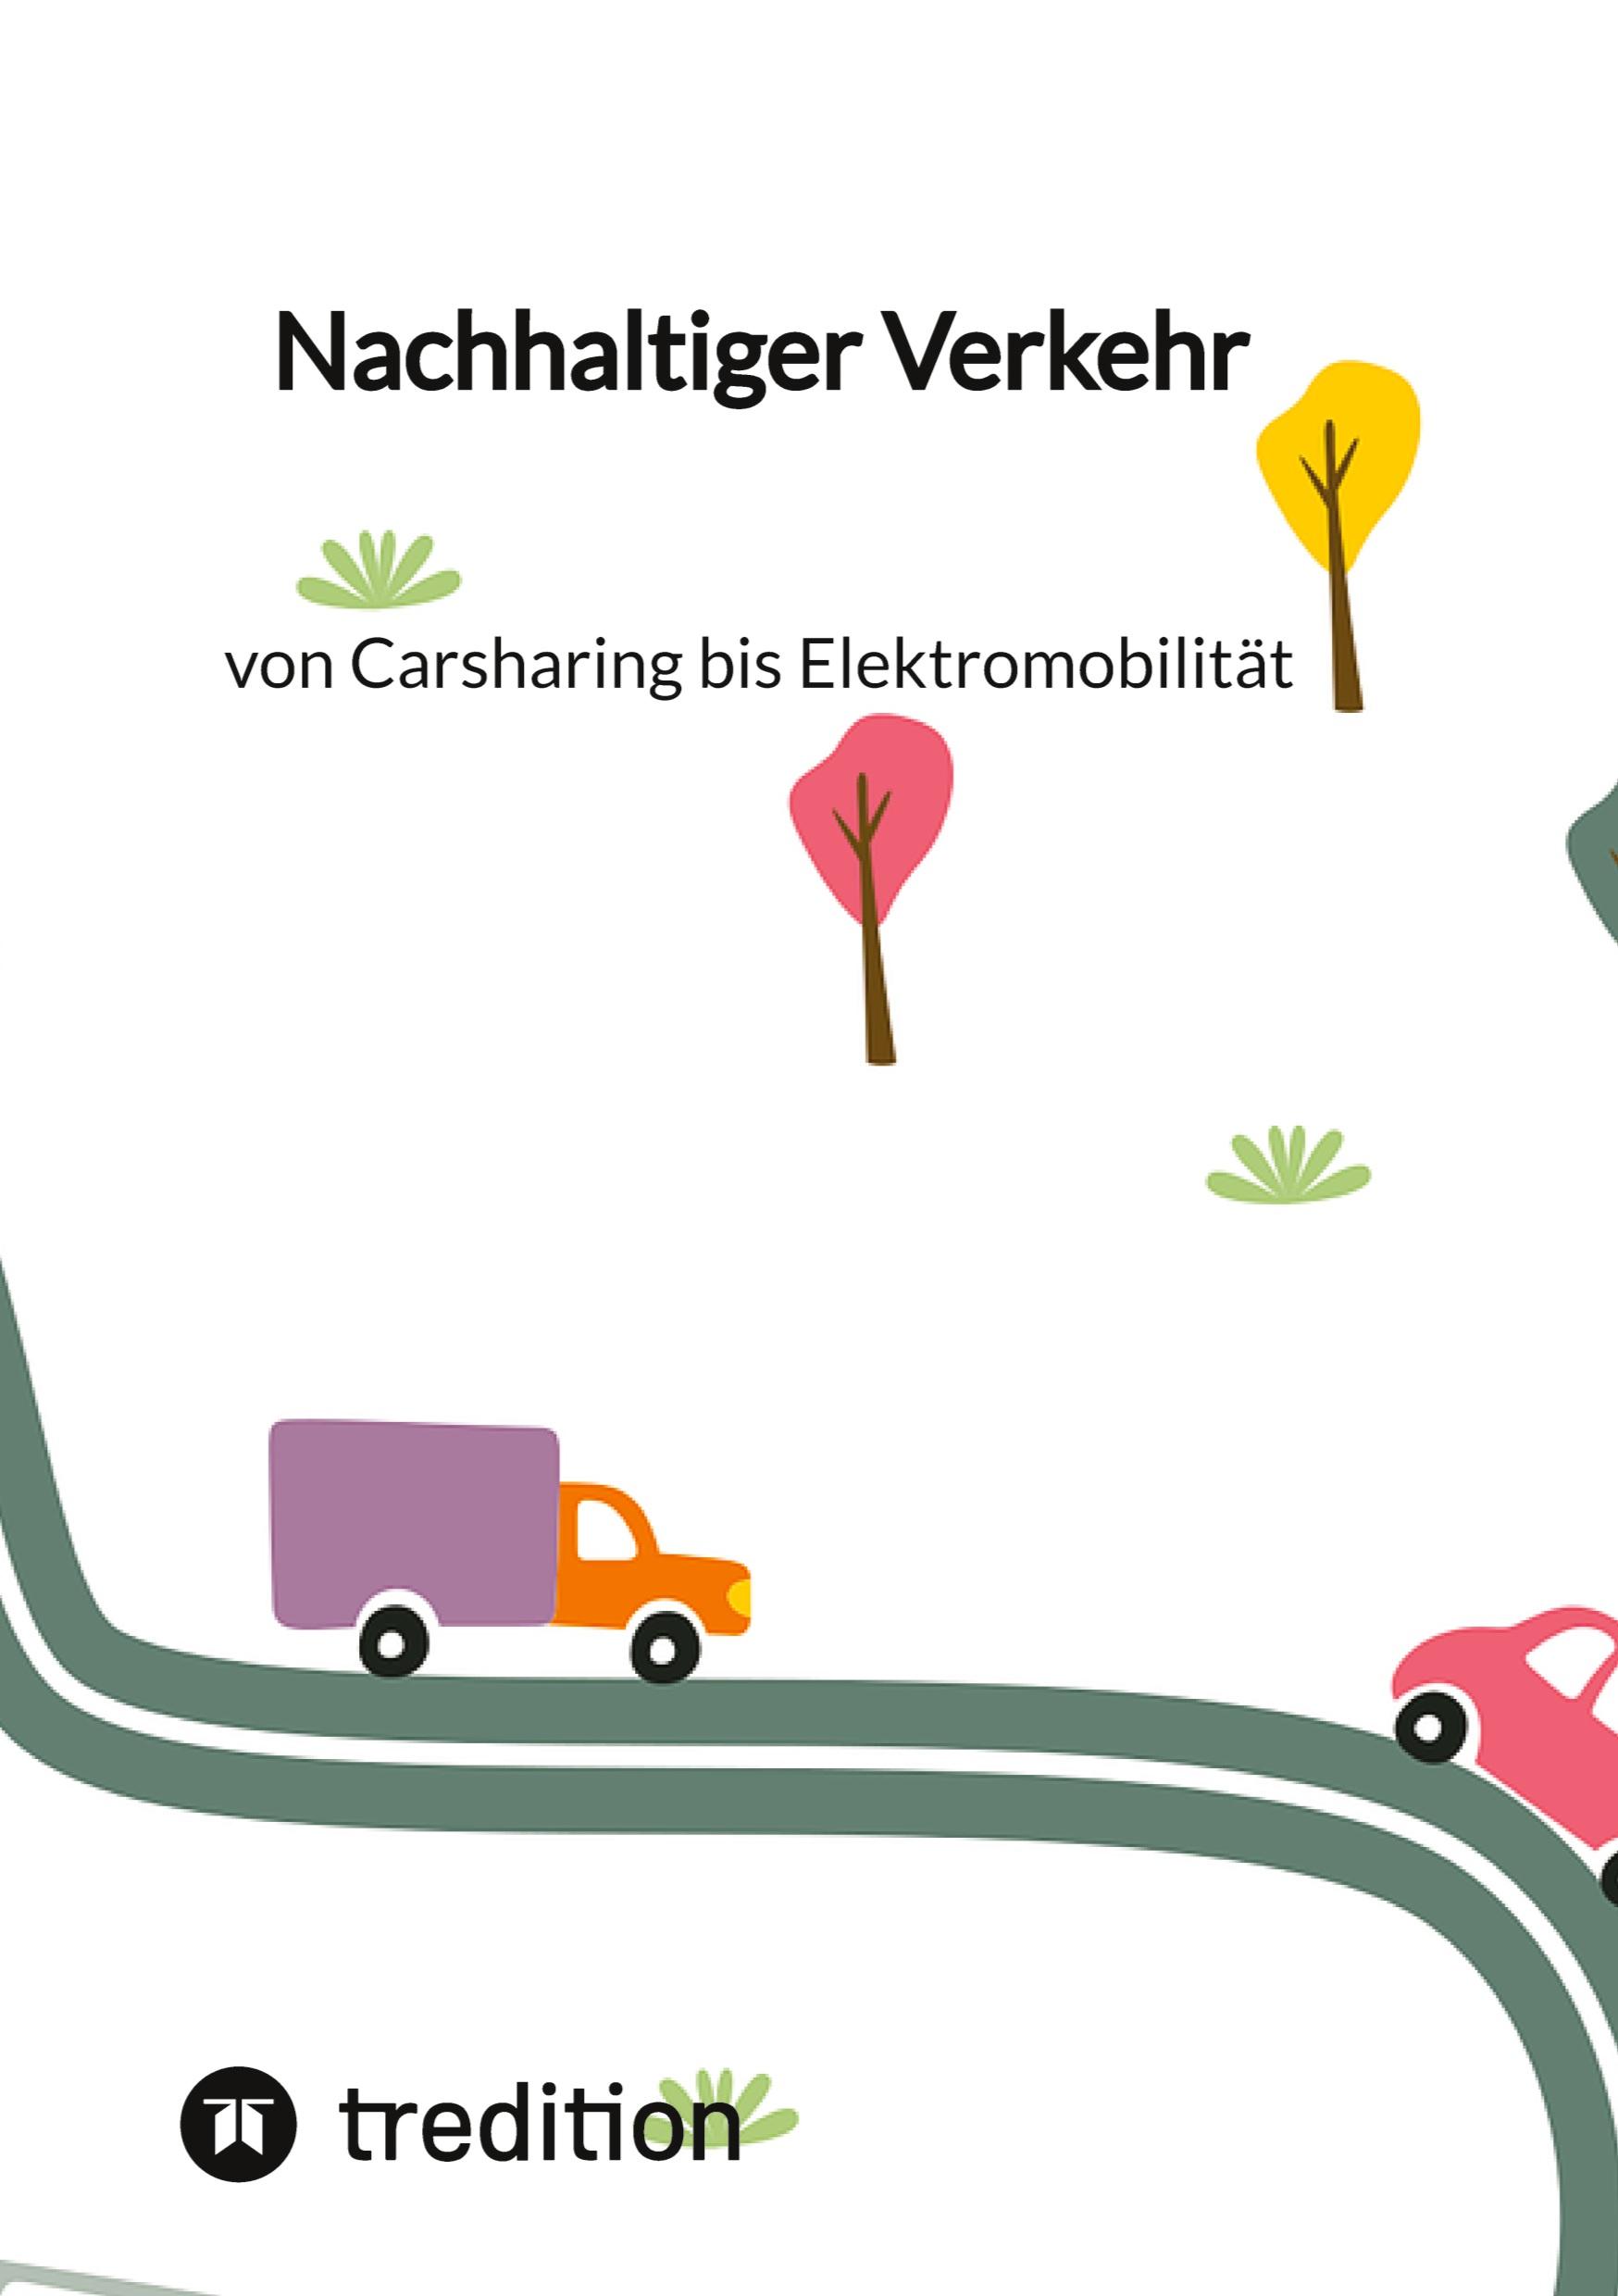 Nachhaltiger Verkehr: von Carsharing bis Elektromobilitaet - Jaltas